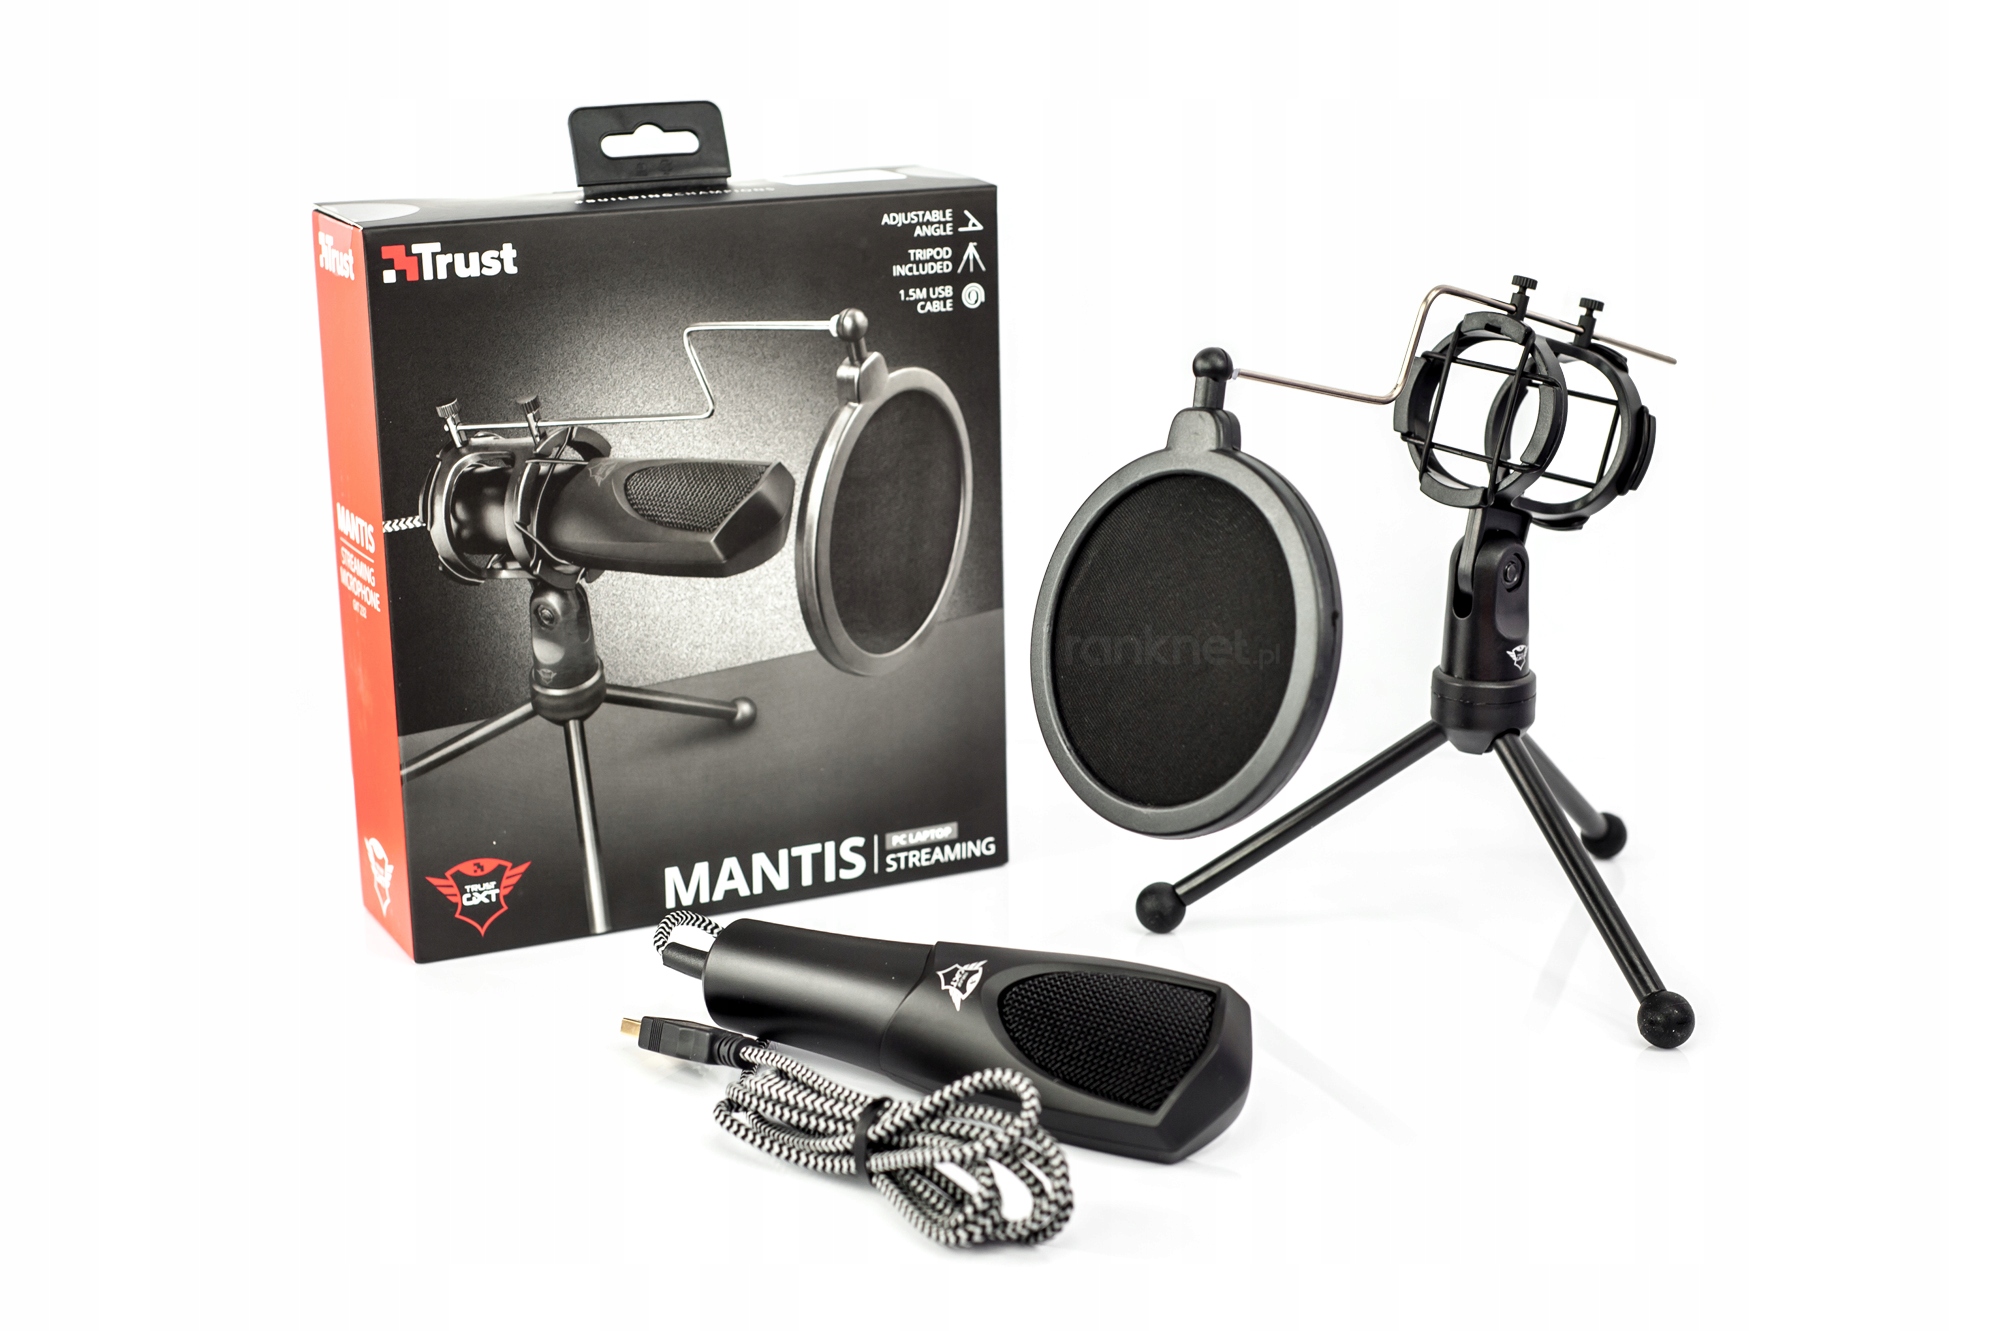 Mikrofon na statywie Trust Gxt 232 Mantis